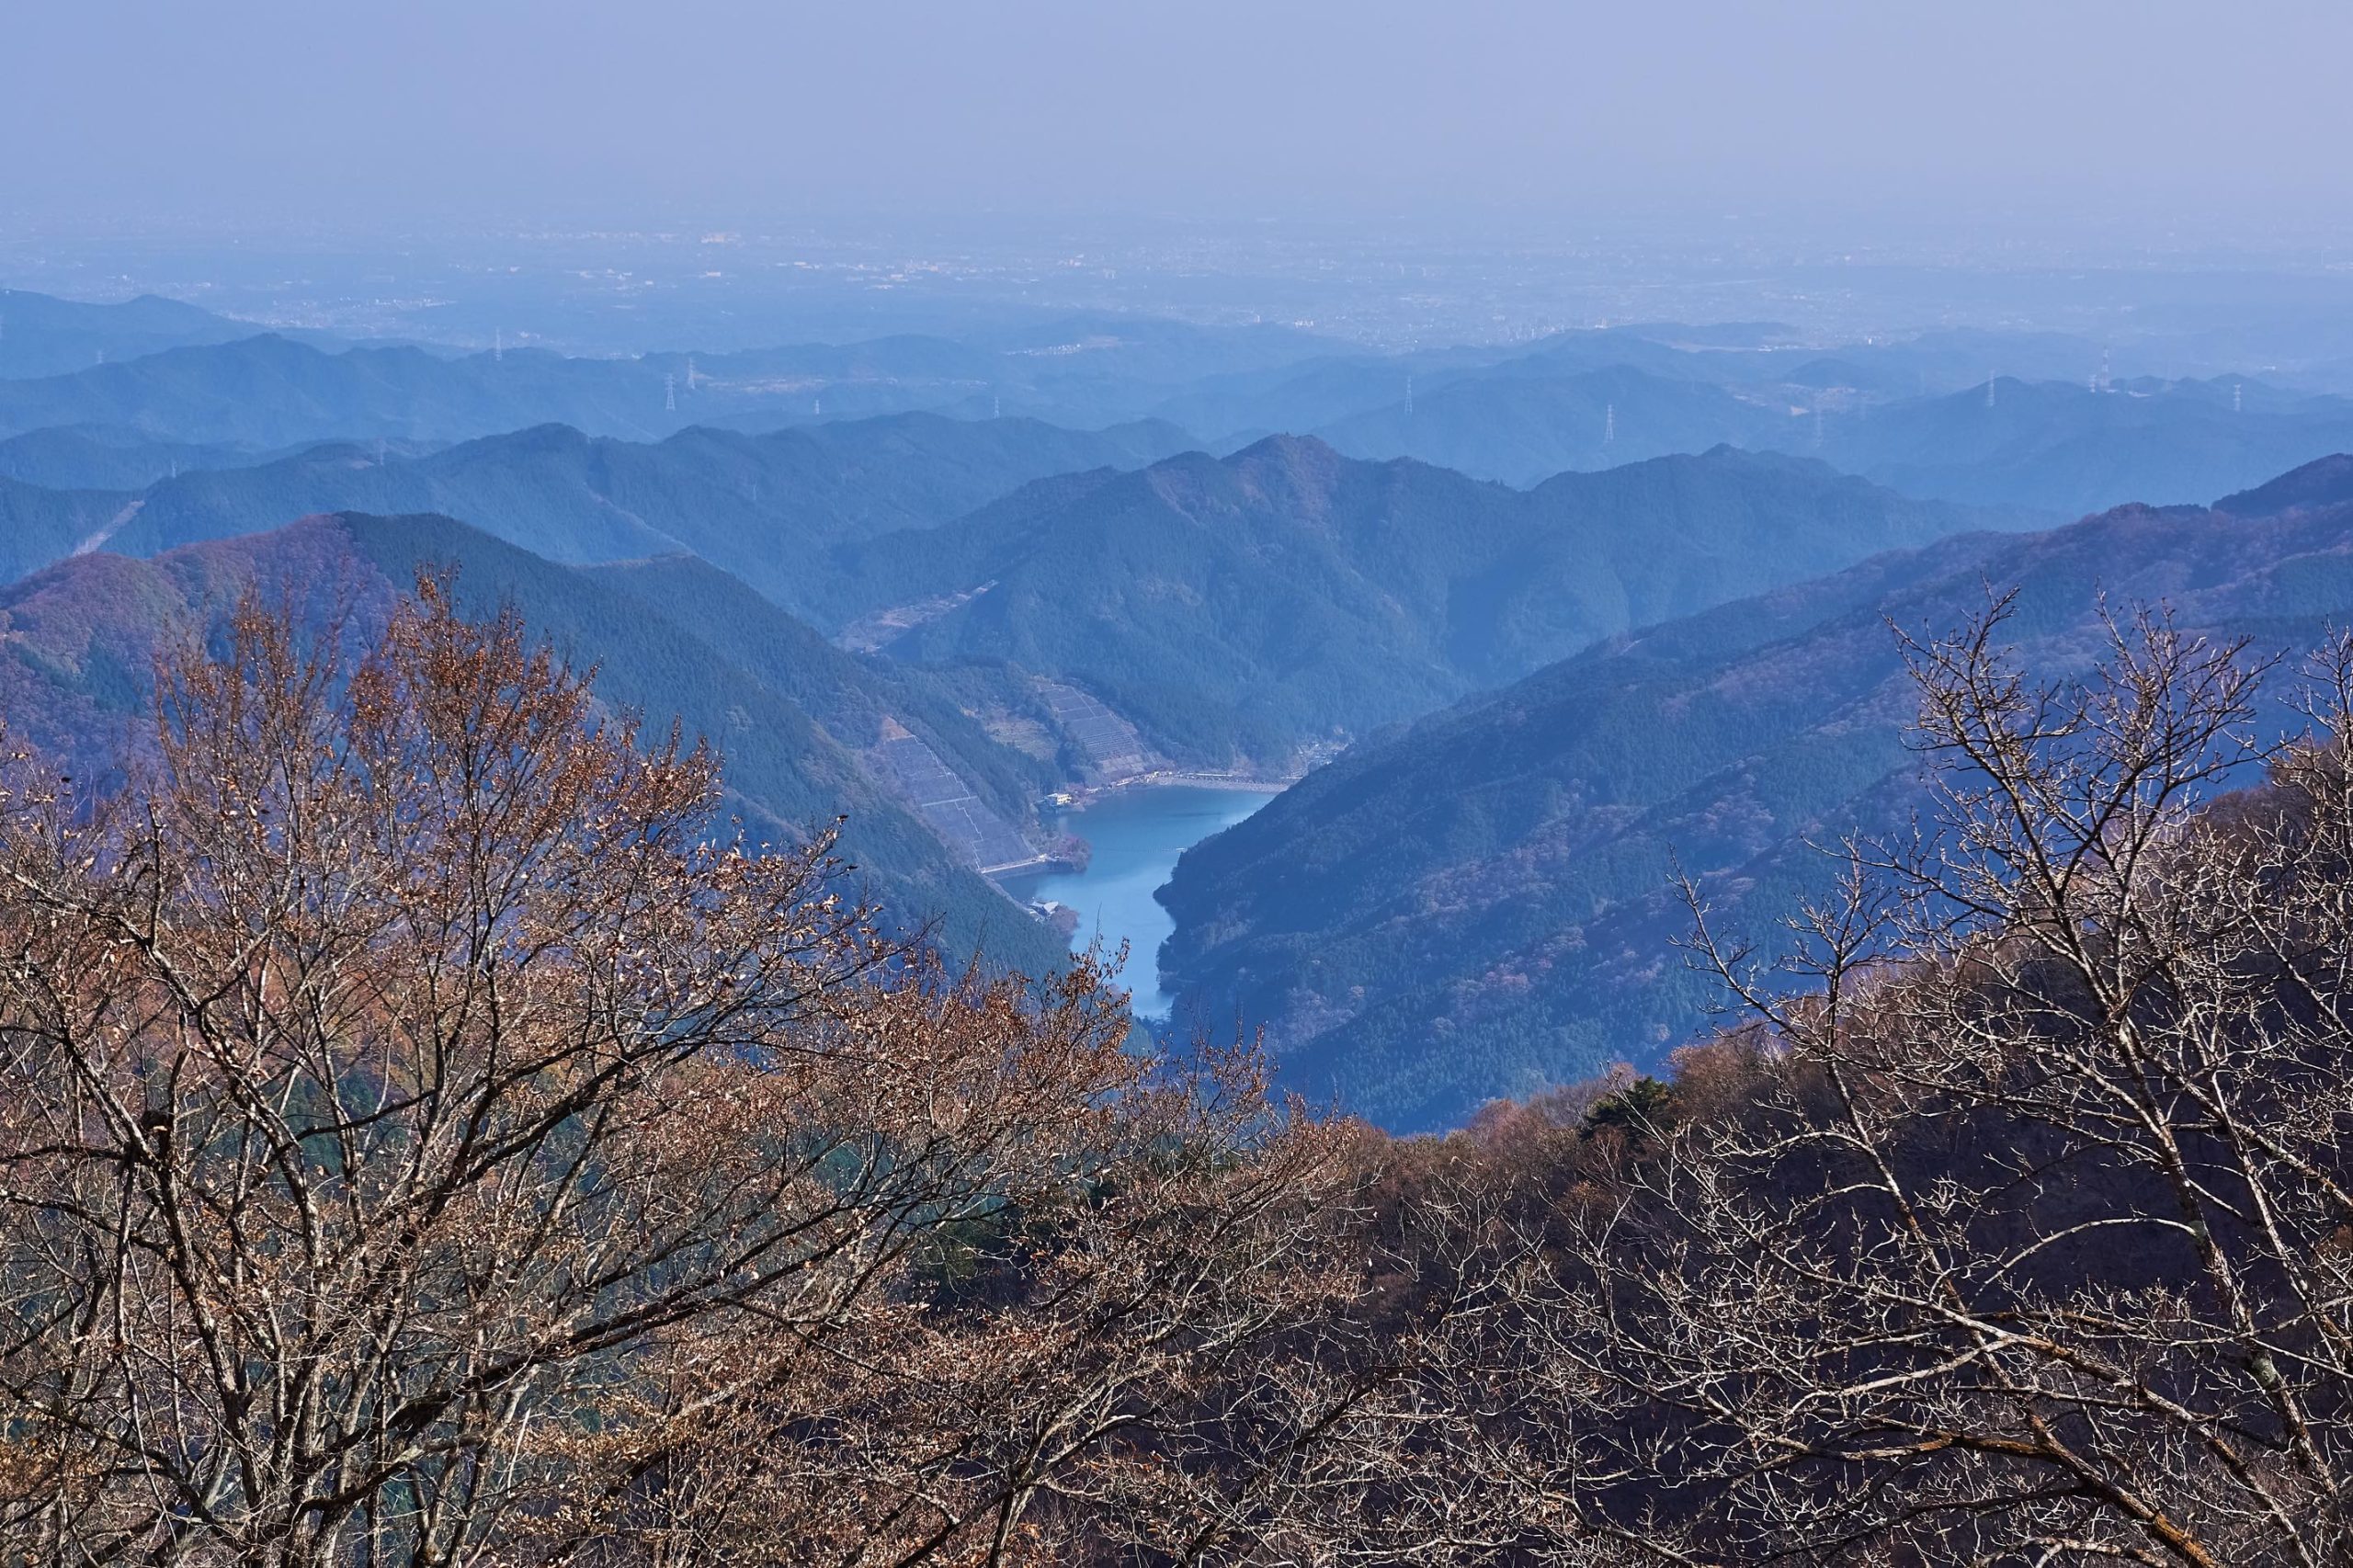 凛とした静寂な空気に溶け合う川のせせらぎ。名栗川渓谷に響くノスタルジックな「冬」の音